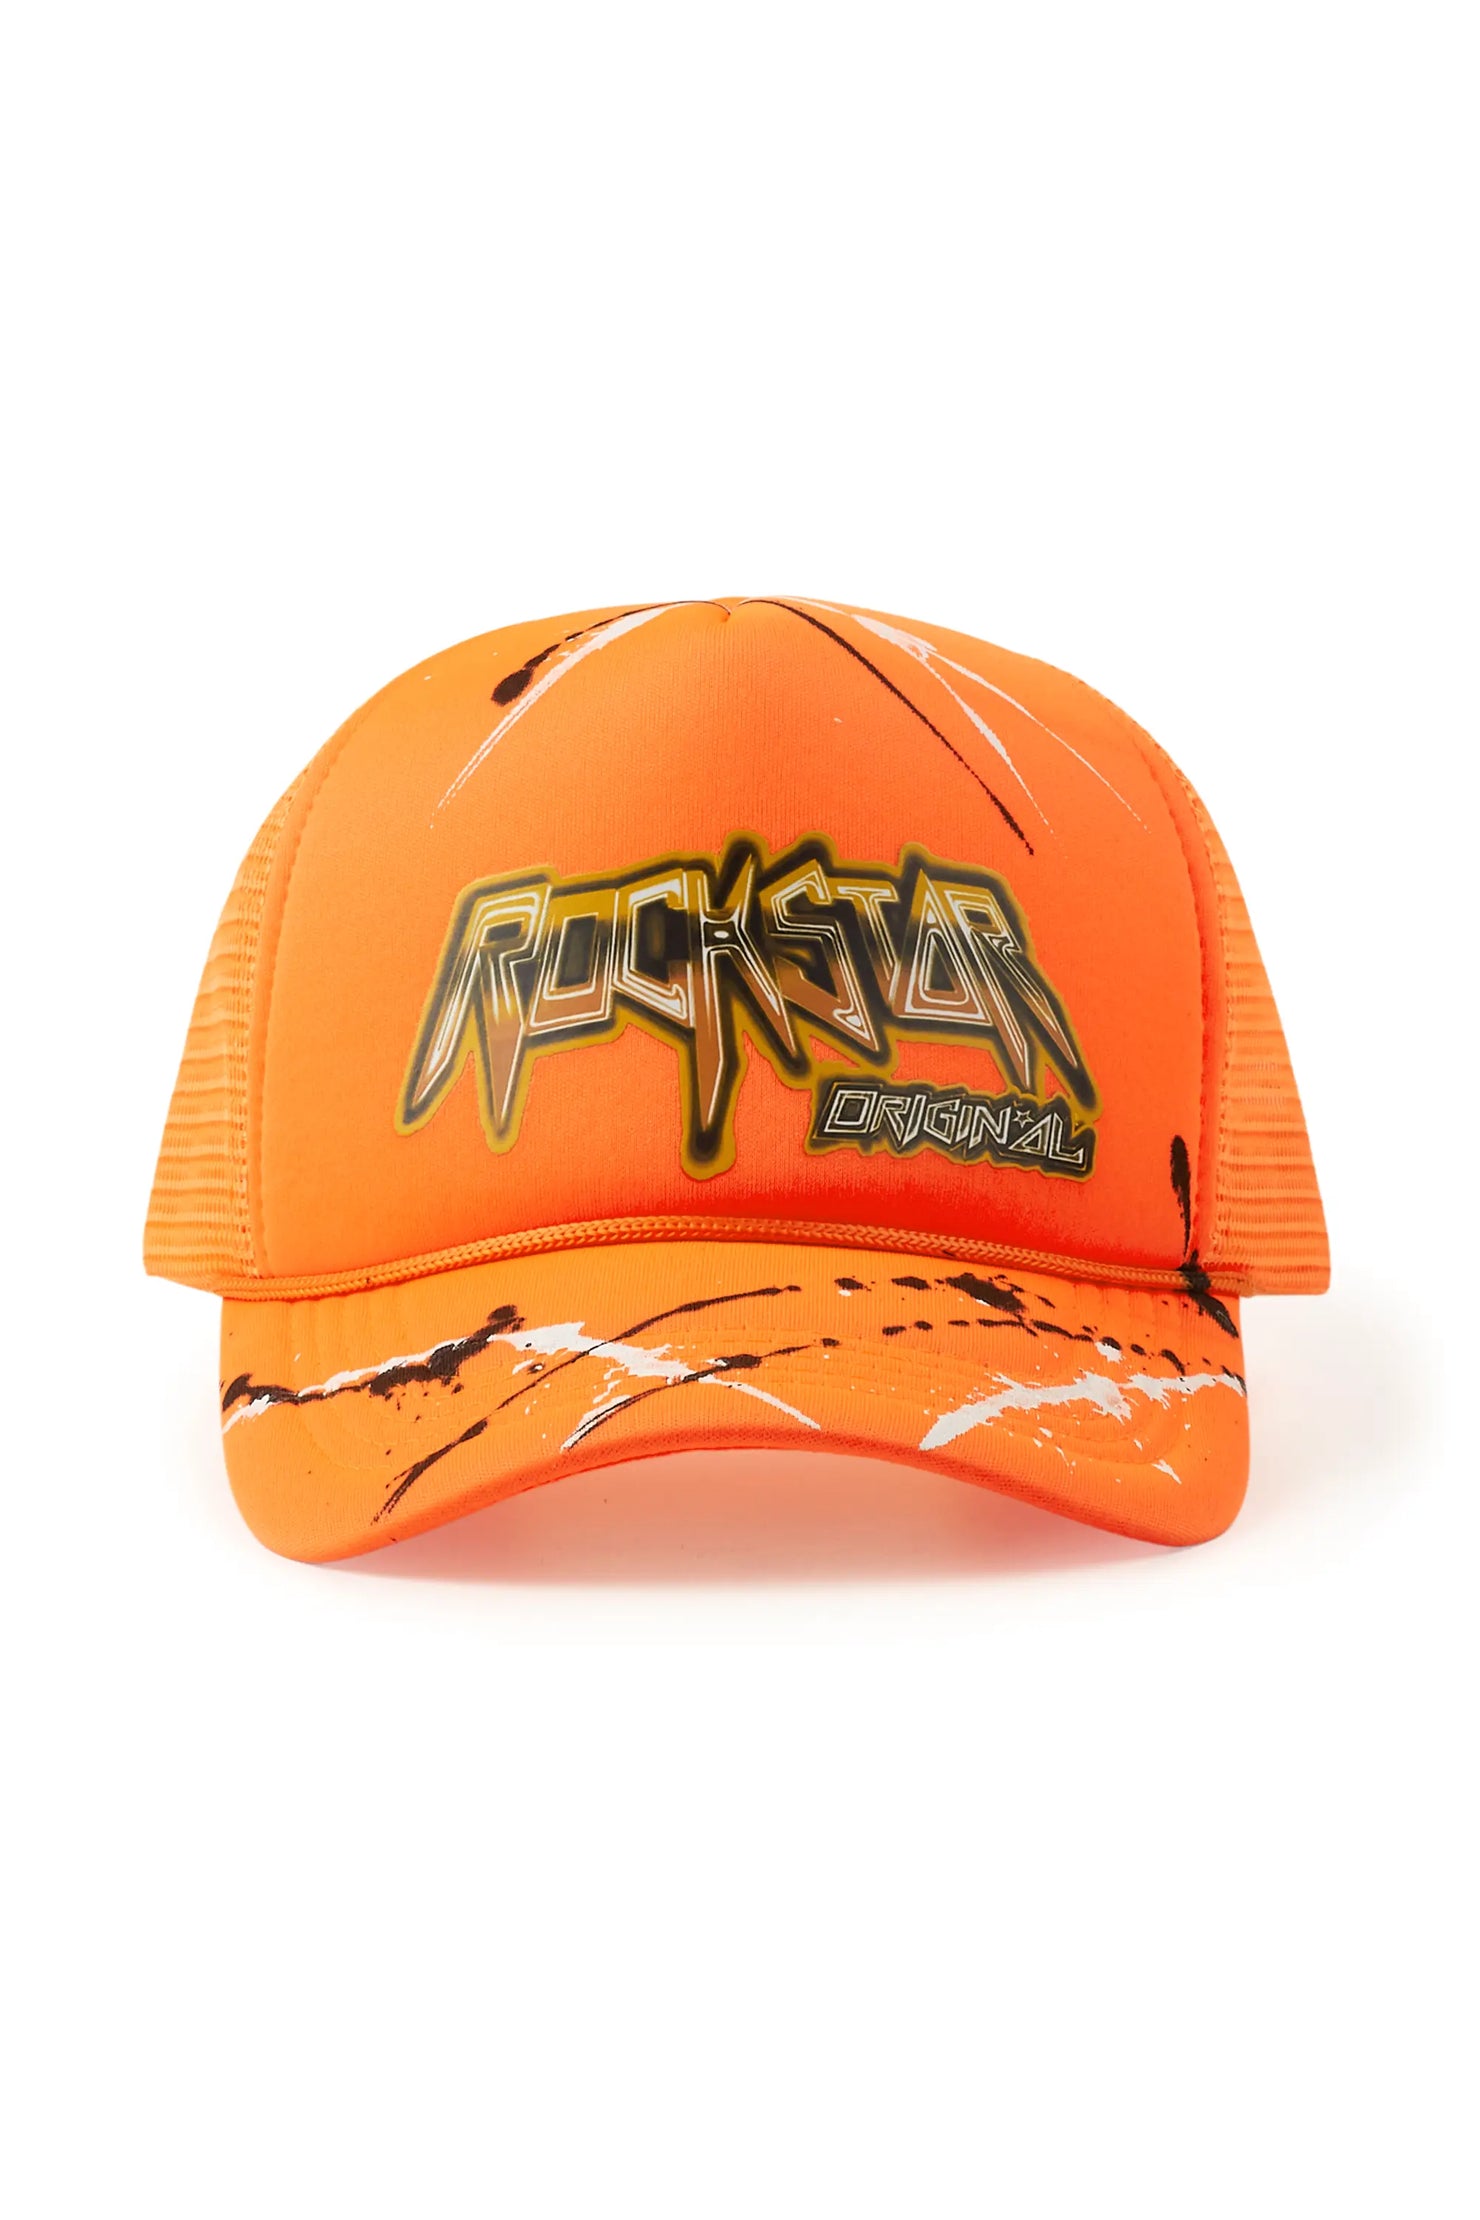 Saman Orange Graphic Trucker Hat